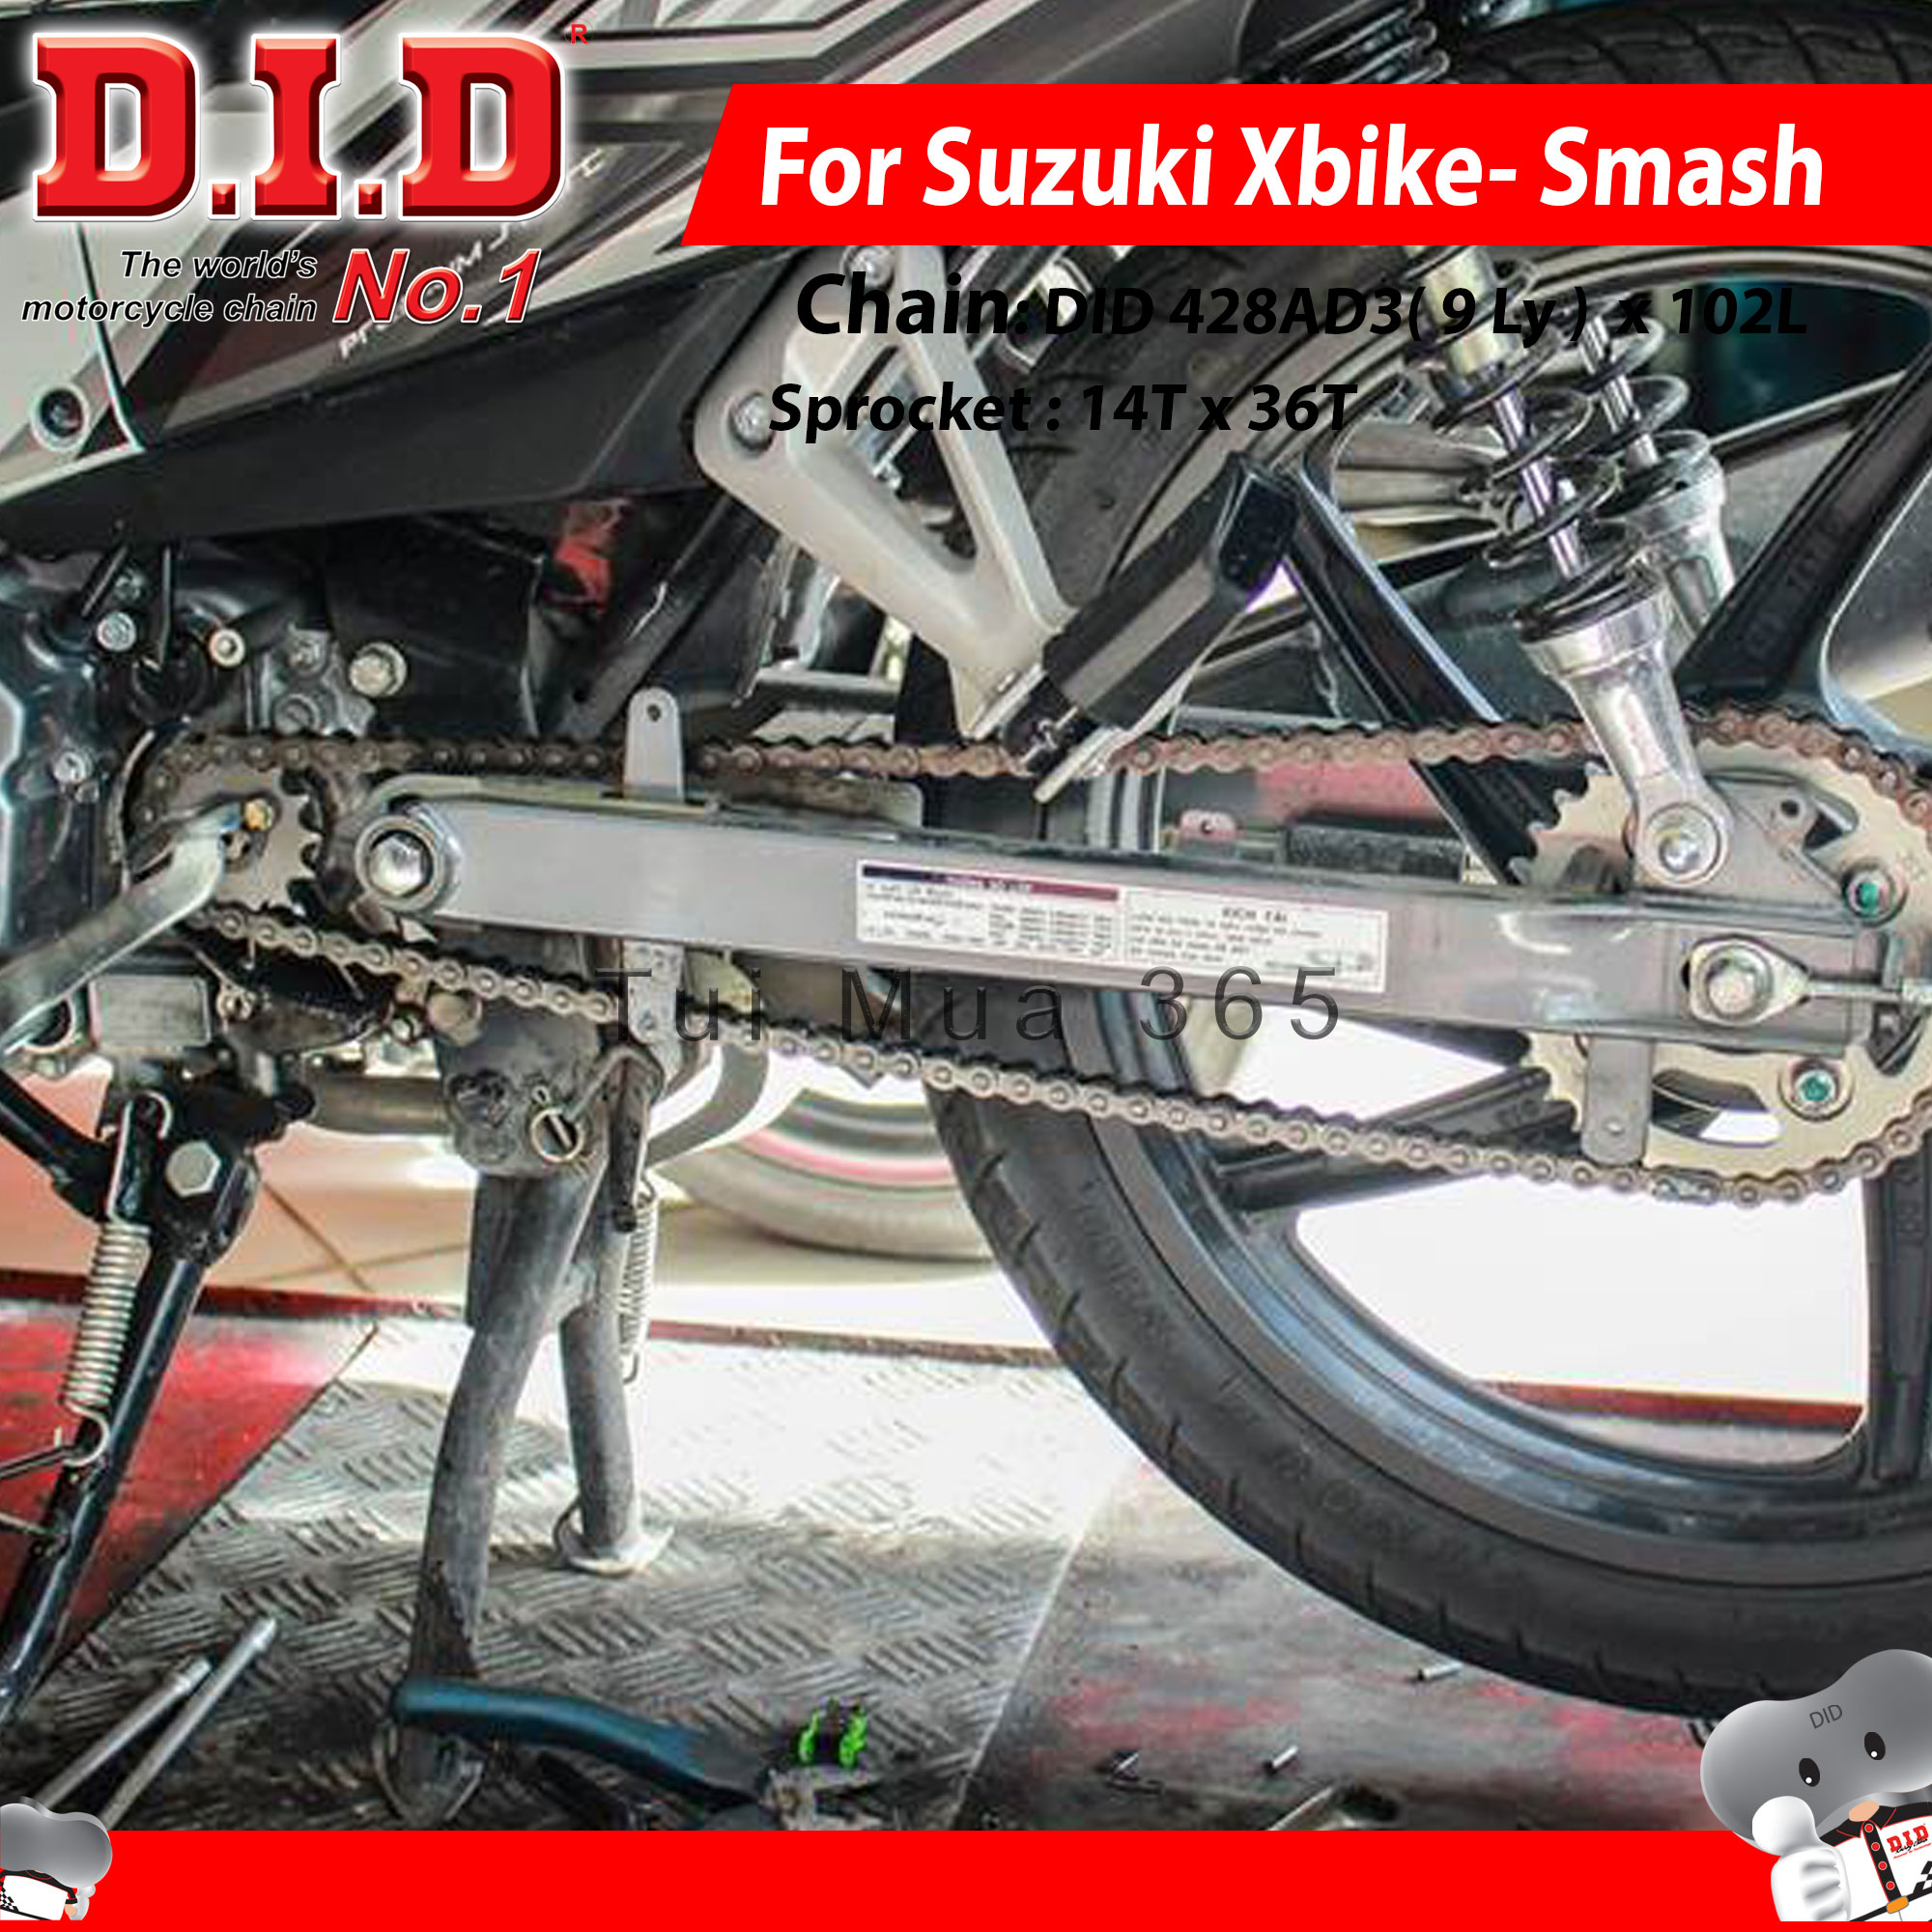 Nhông Sên Dĩa DID Suzuki XBike, Smash ReVo Sên Đen 9ly DID AD3 Thái Lan ...